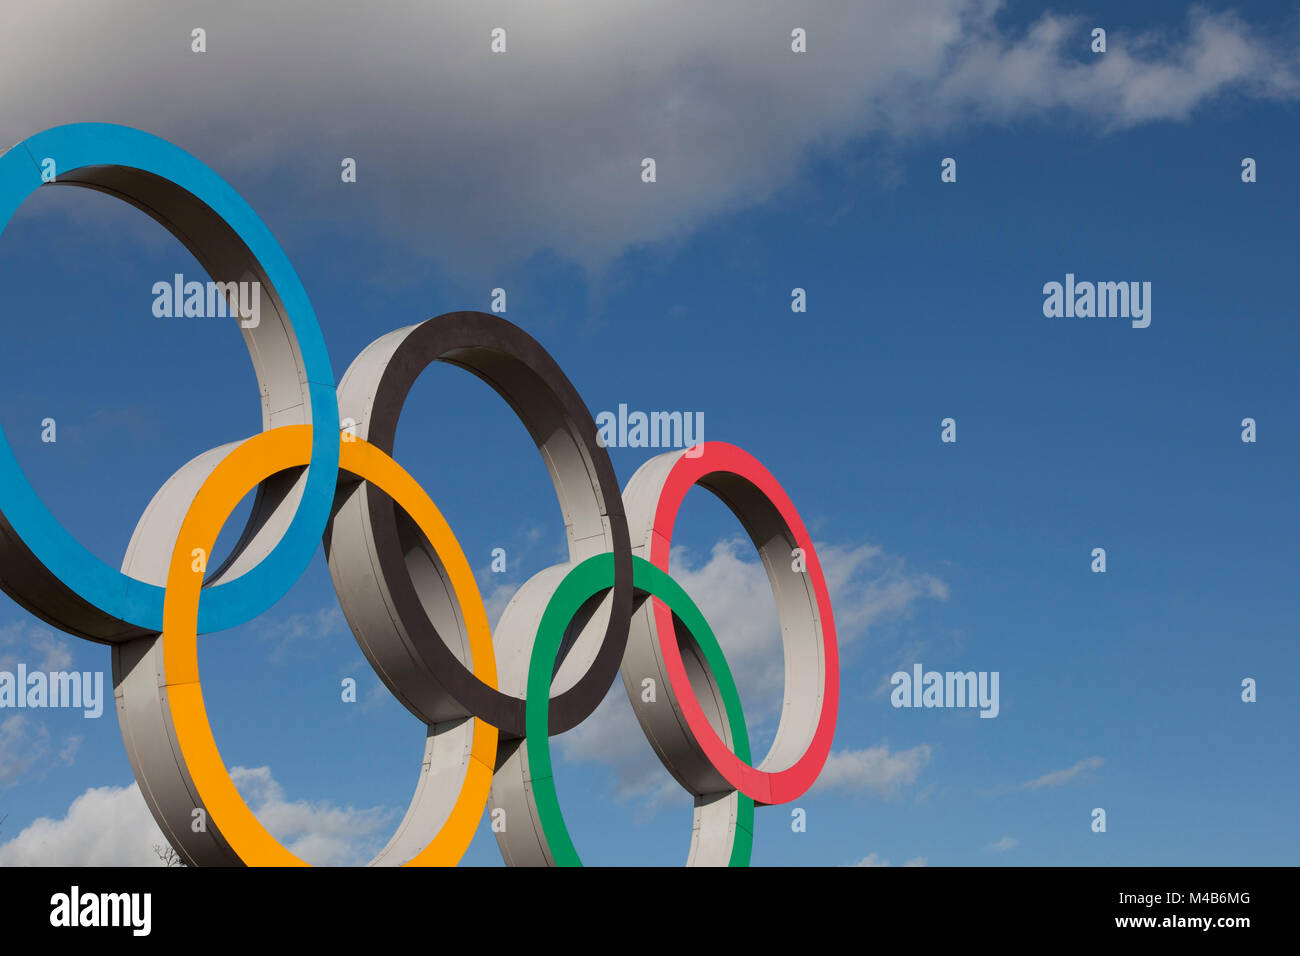 Londres, Royaume-Uni - 15 Février 2018 : Le symbole olympique, composée de cinq anneaux de couleur, interconnectés sous un ciel bleu Banque D'Images